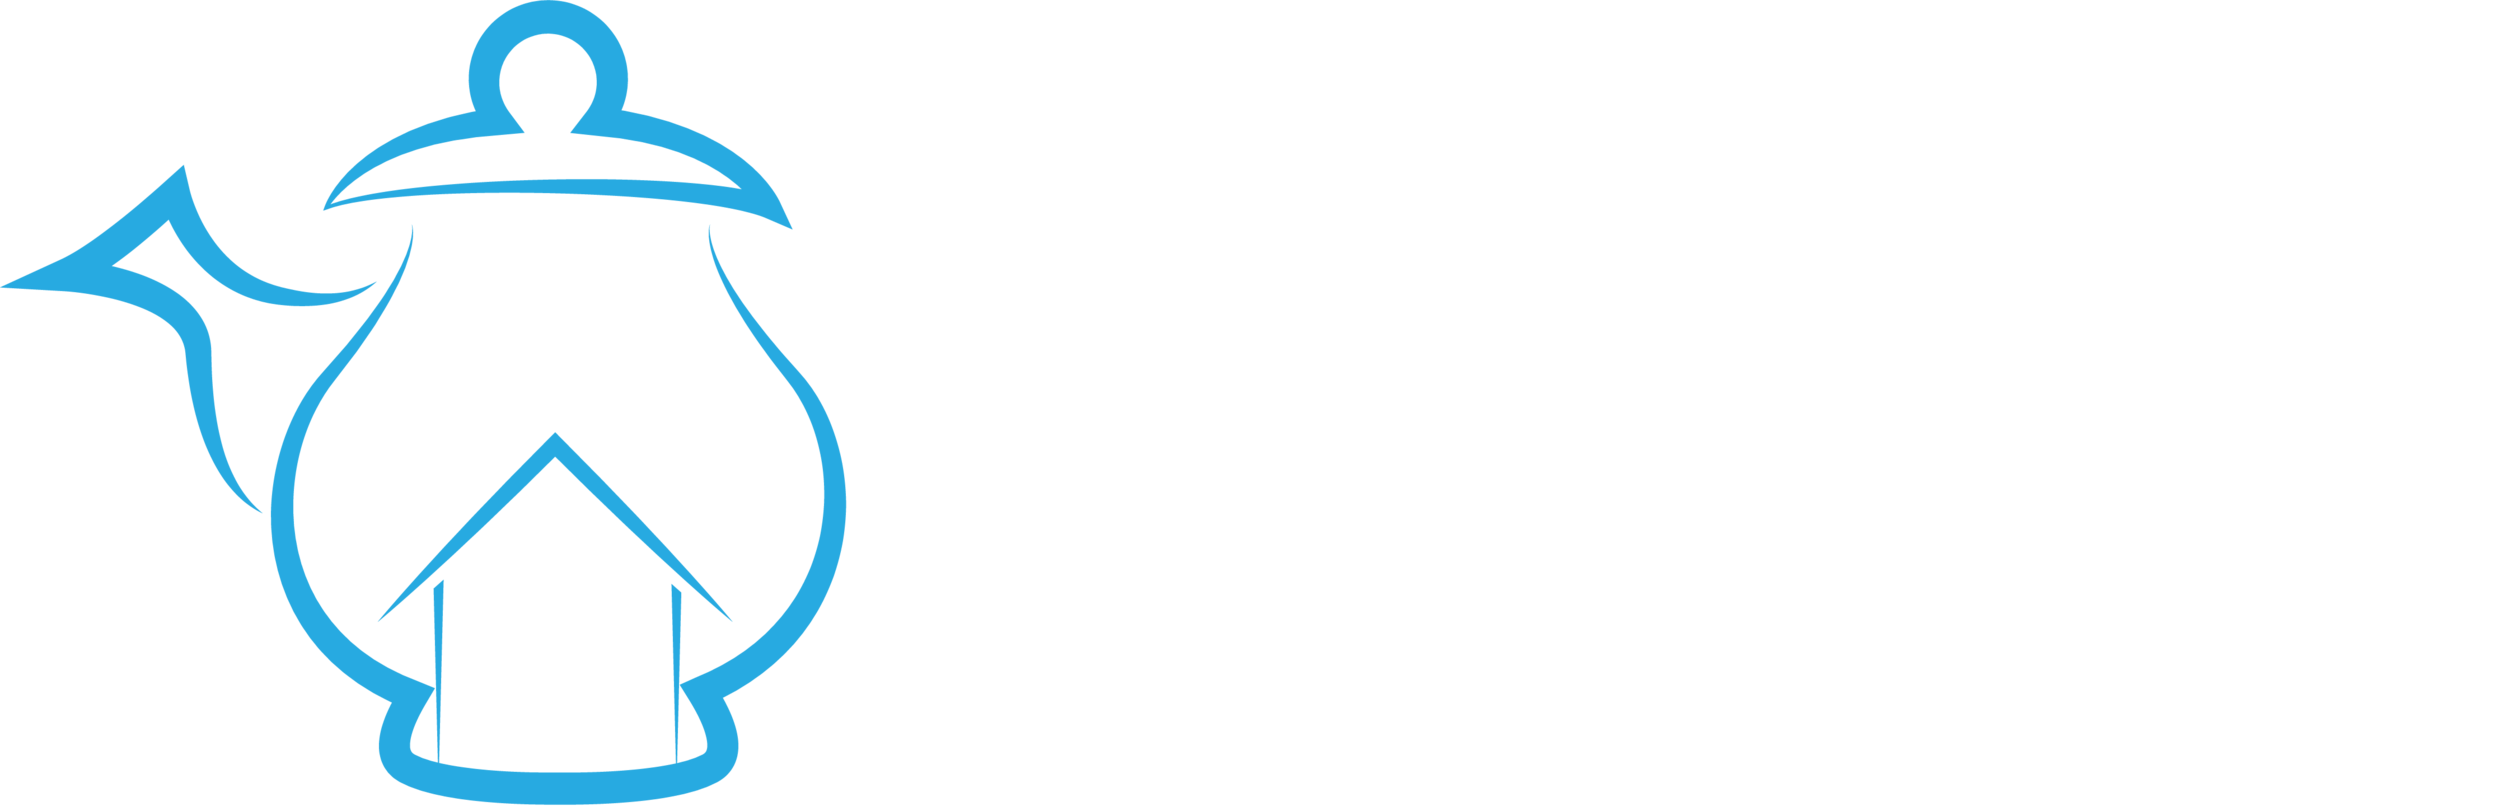 Serenity Tea House Cafe